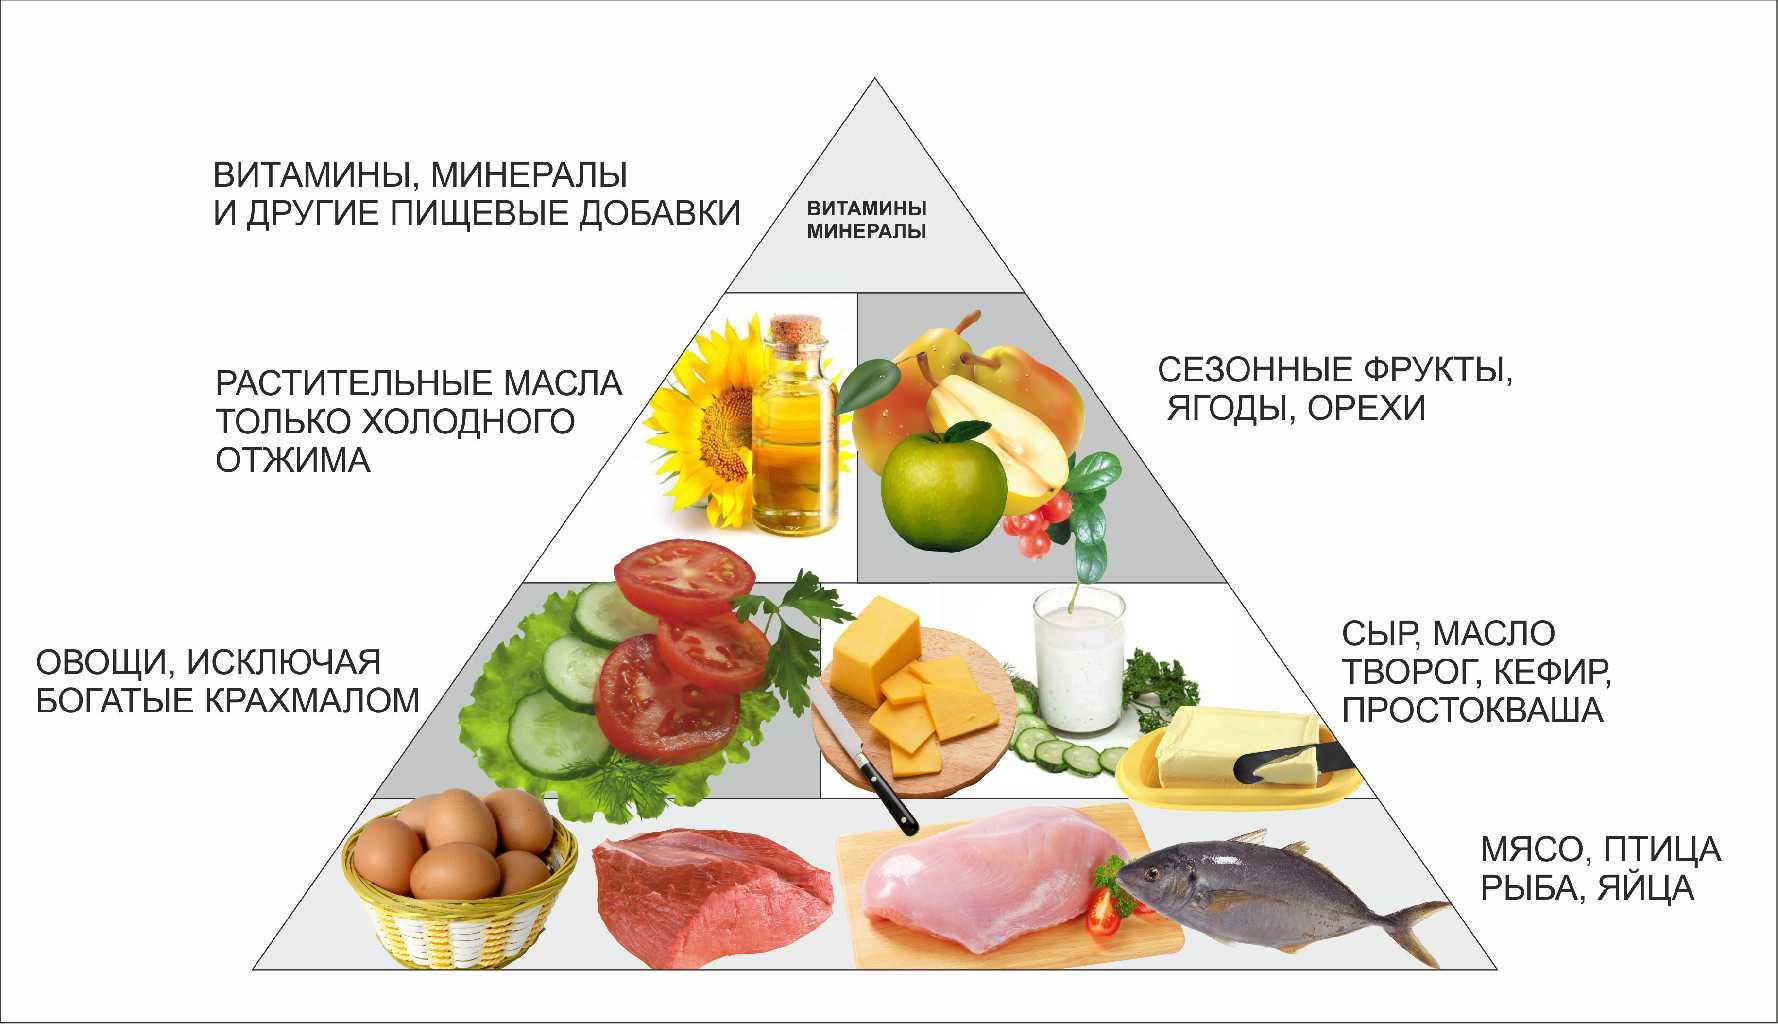 Рецепты блюд и меню безуглеводной диеты для похудения на неделю, таблица продуктов